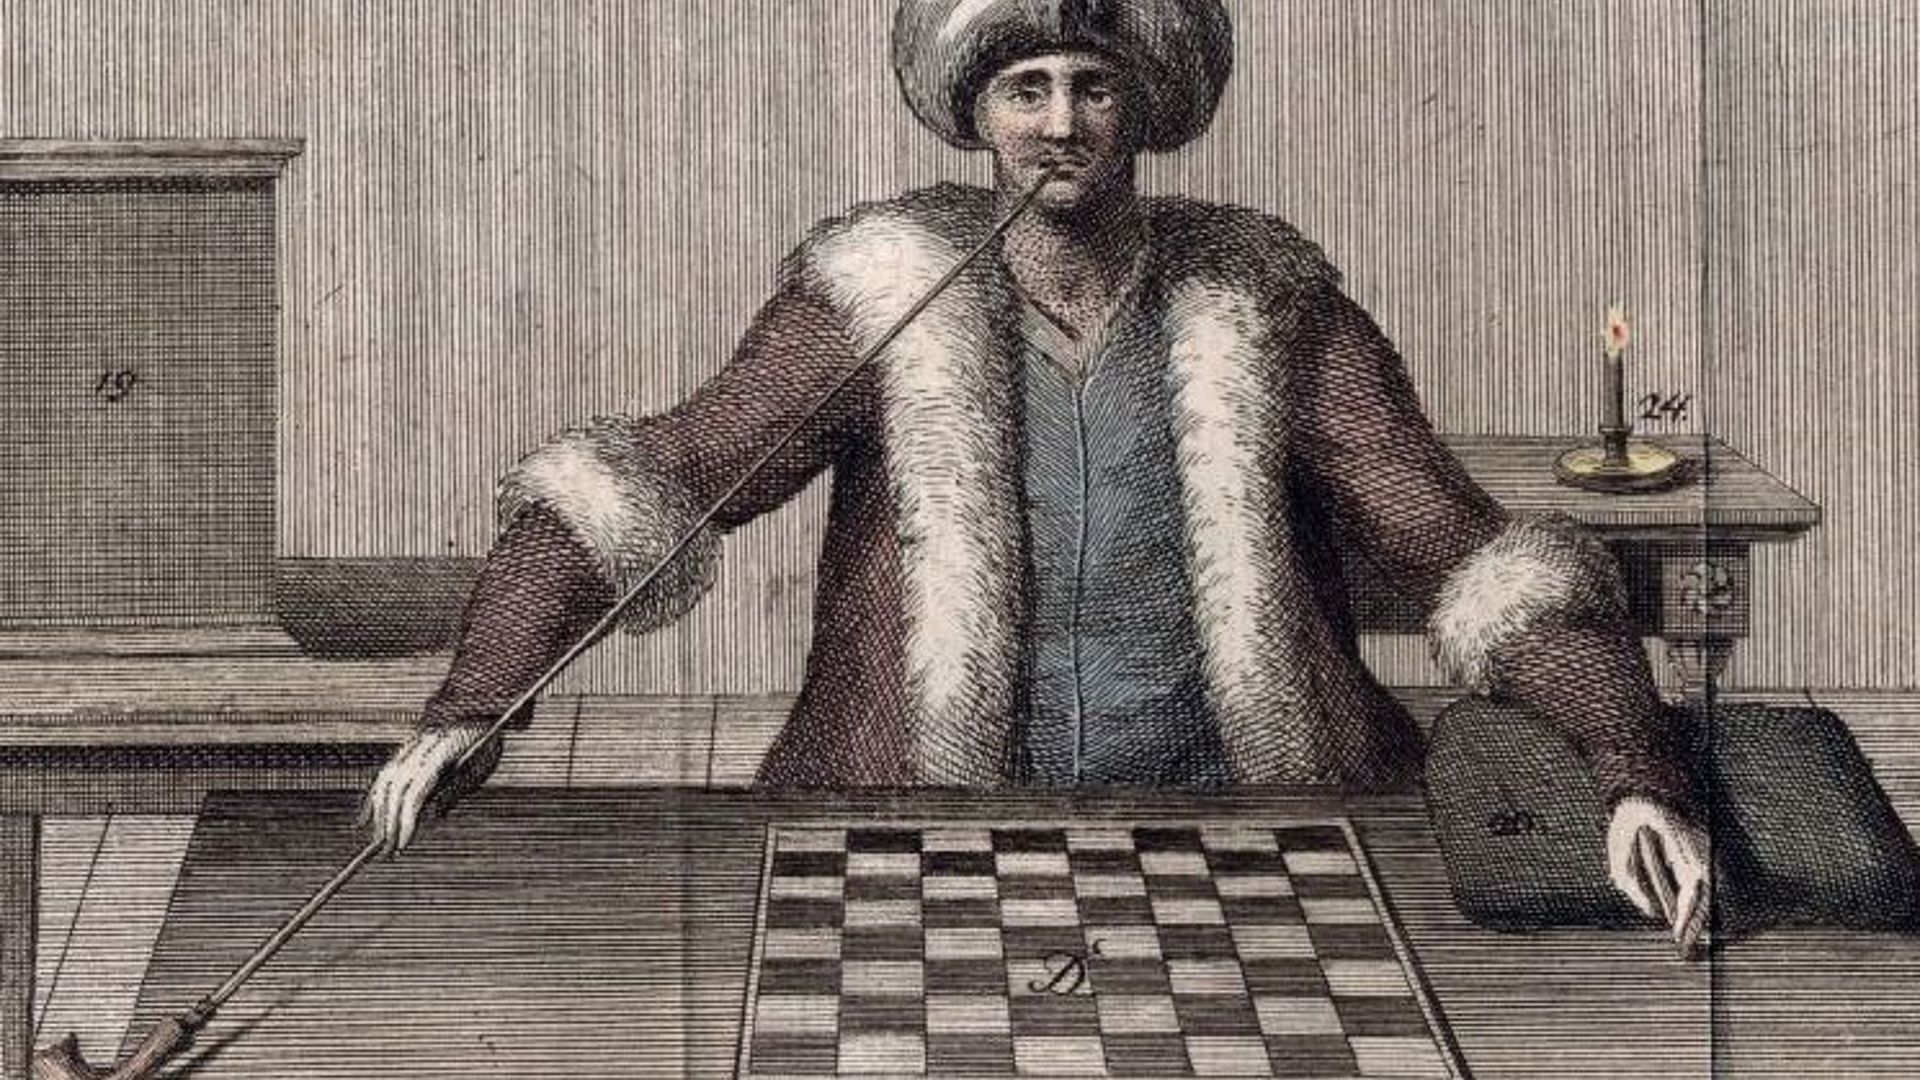 Die Zeichnung zeigt einen Pfeife rauchenden Schachspieler mit Turban.